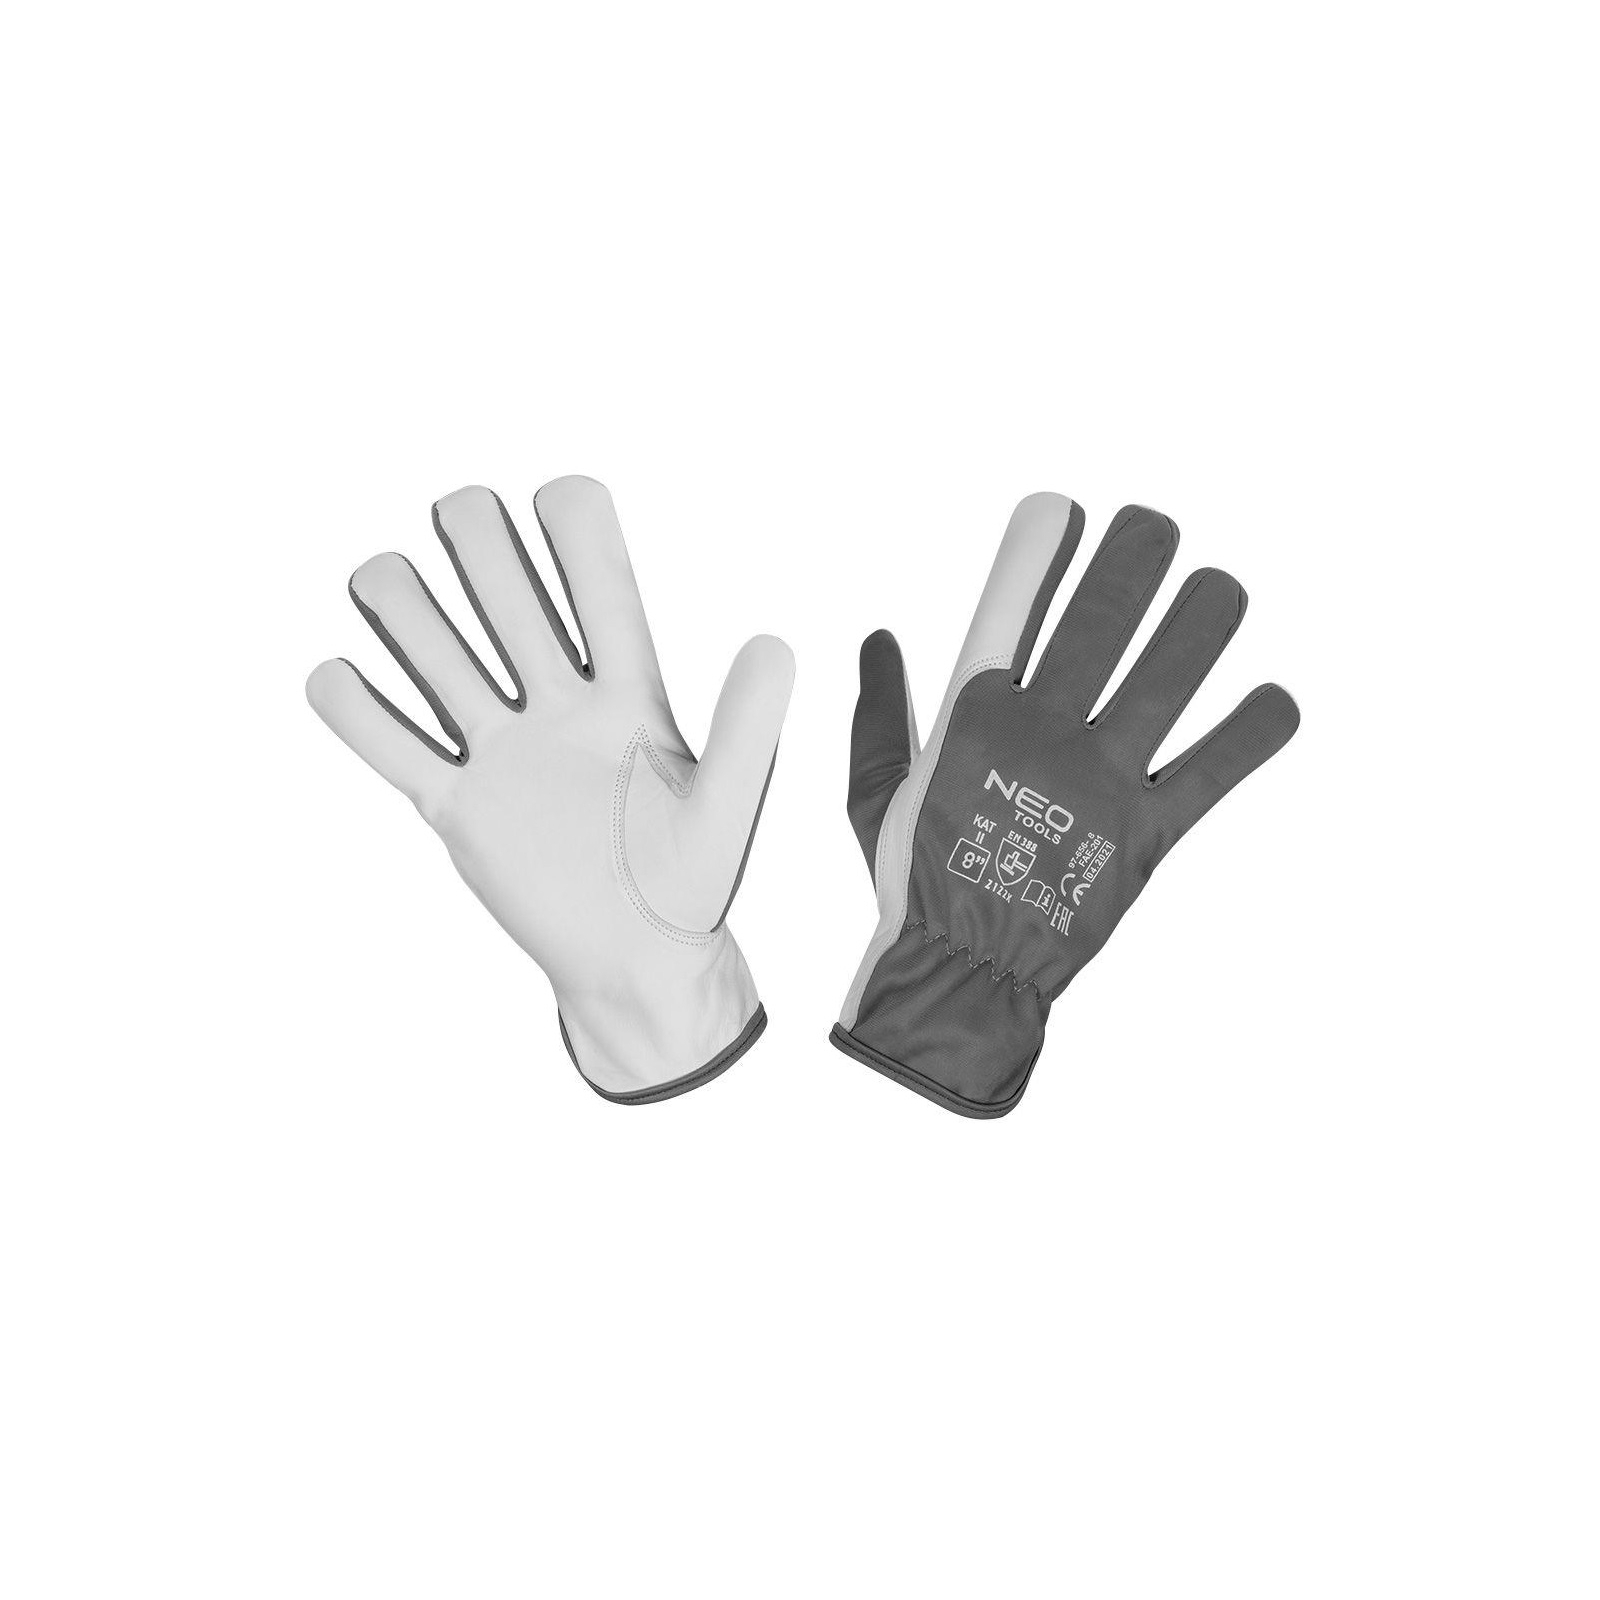 Защитные перчатки Neo Tools козья кожа, р.8, серо-белый (97-656-8)